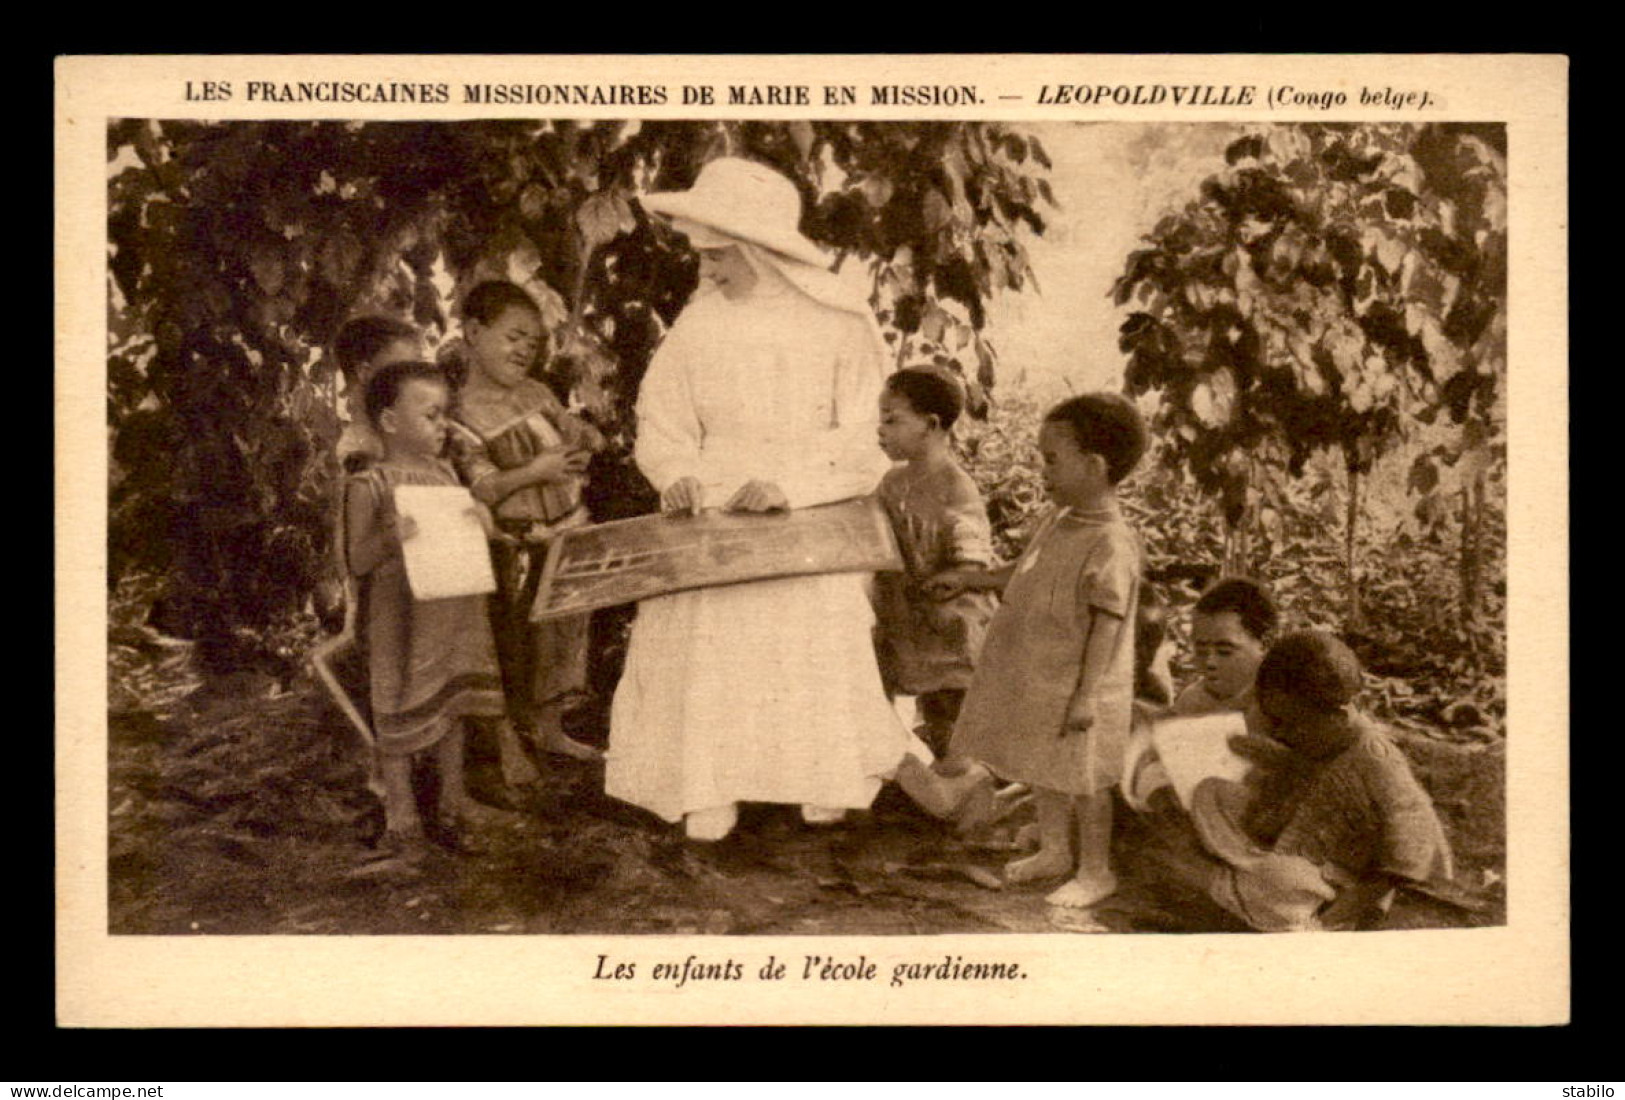 MISSIONS - LEOPOLDVILLE (CONGO-BELGE)  - FRANCISCAINES DE MARIE EN MISSION - LES ENFANTS DE L'ECOLE GARDIENNE - Missions